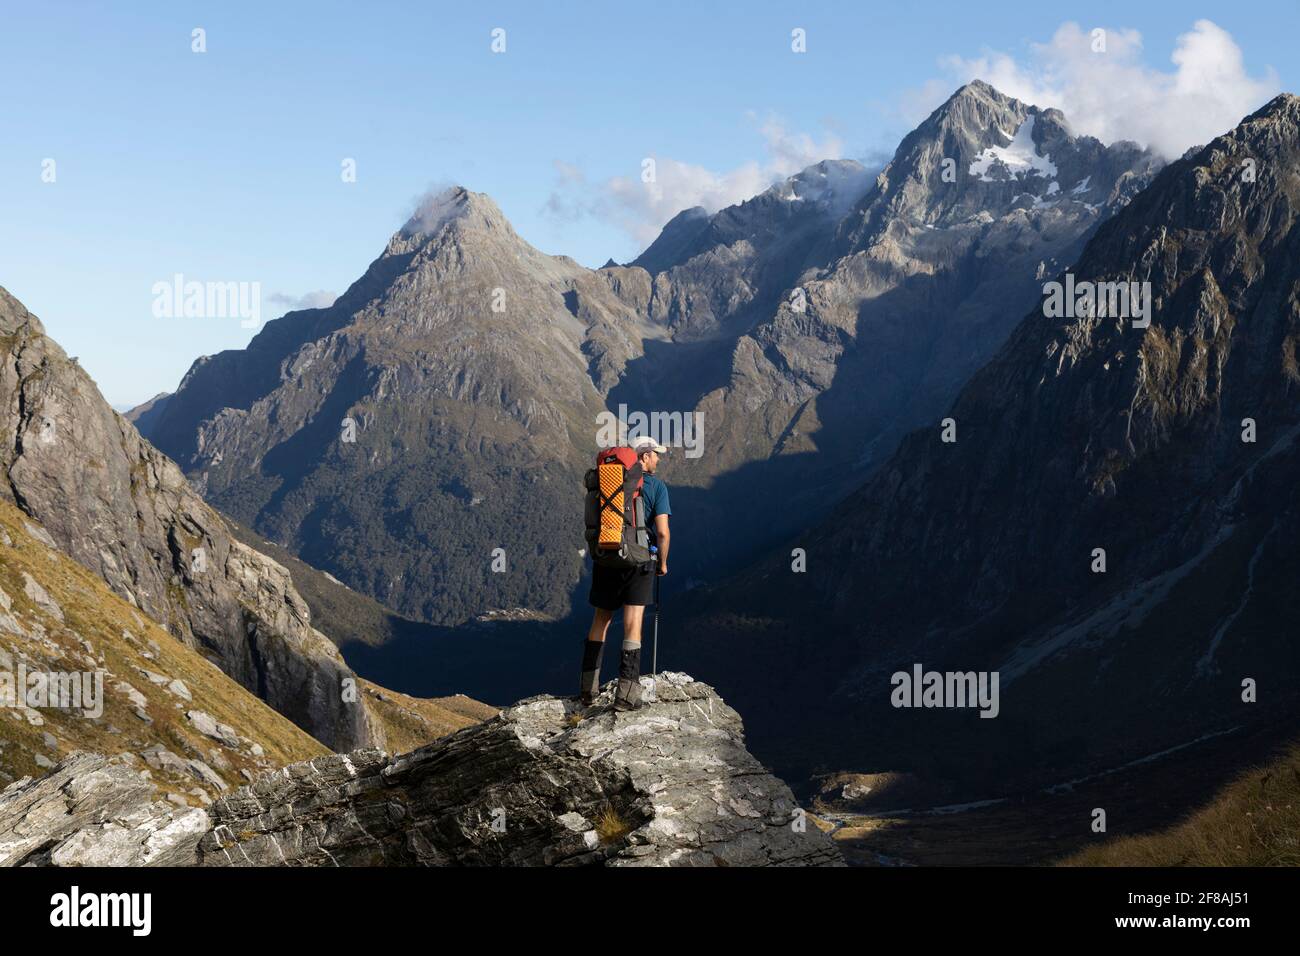 Man on Mountain avec une vue incroyable, Nouvelle-Zélande Banque D'Images